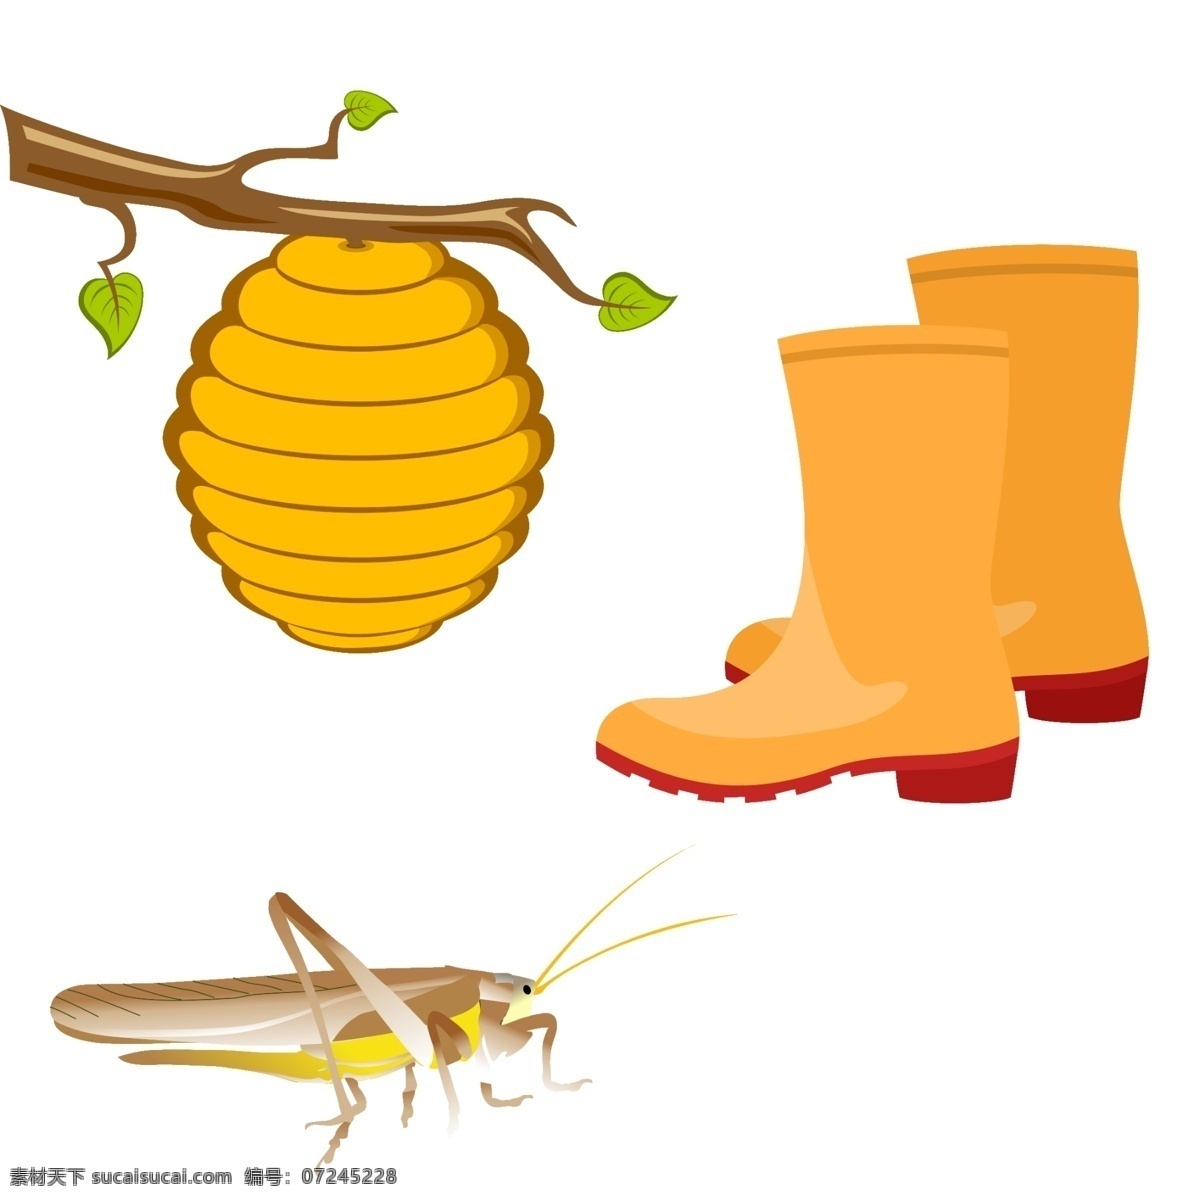 美丽 的卡 通 可爱 手绘 秋季 动画 蜂蜜 雨靴 漂亮 卡通 秋天 昆虫 树叶